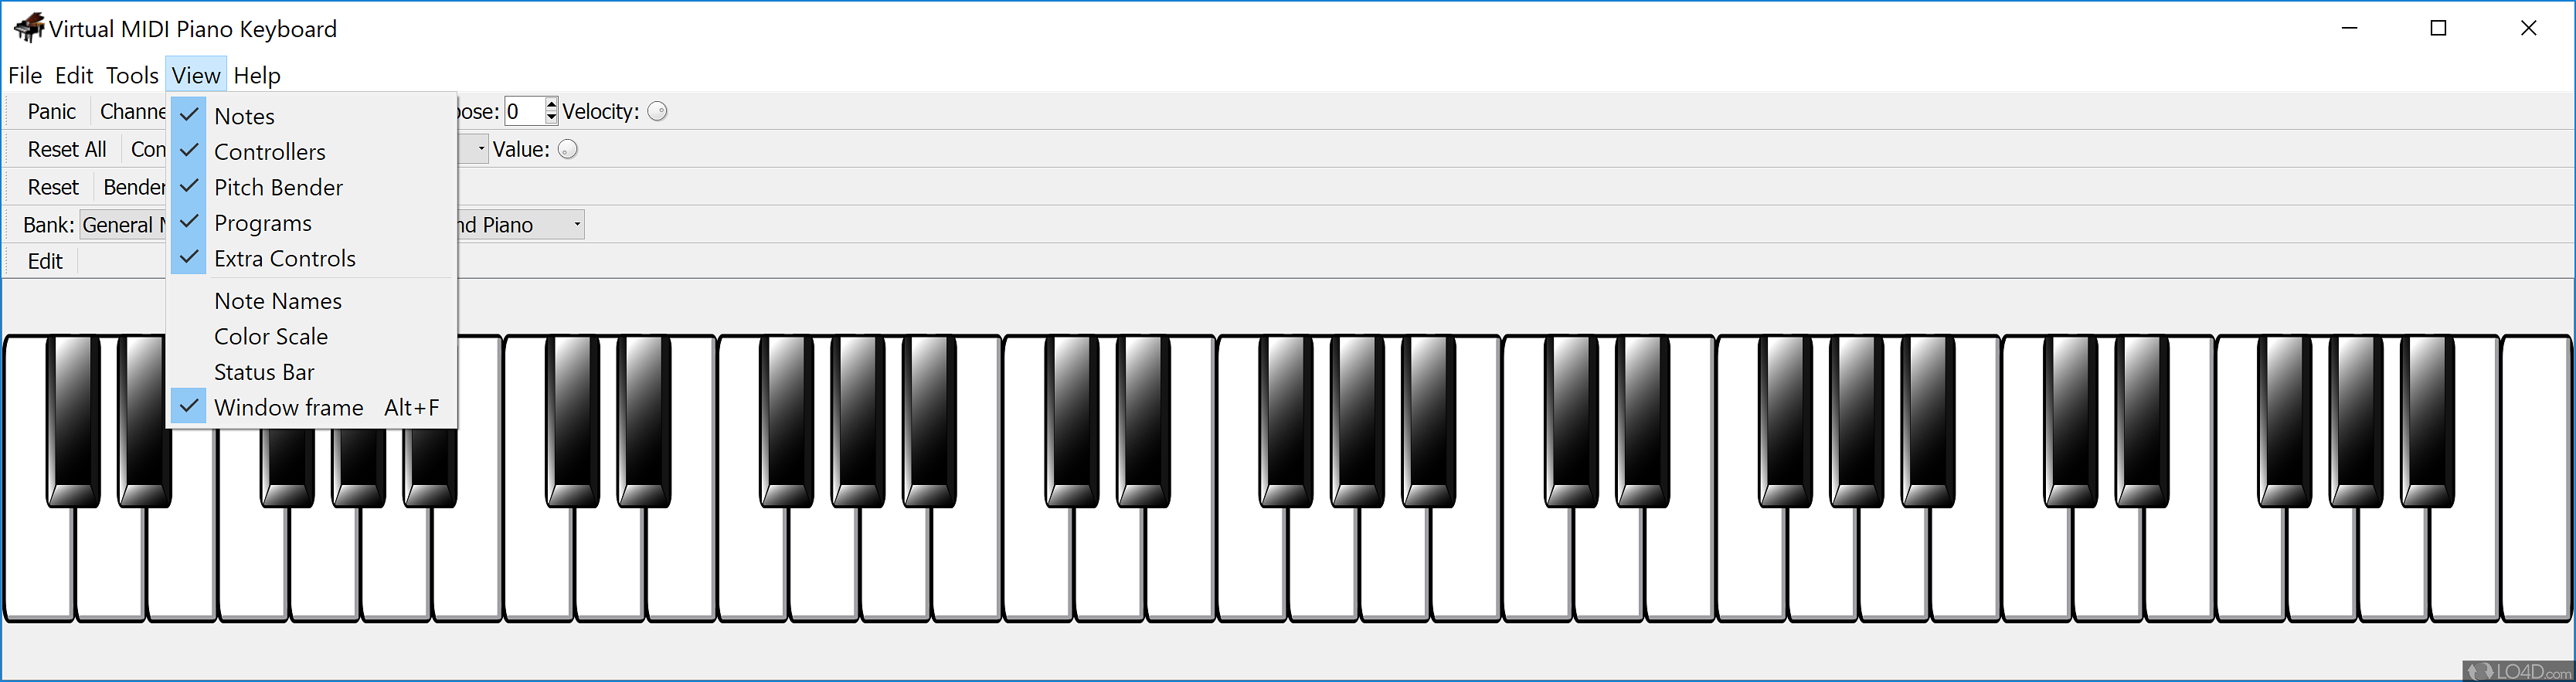 virtual midi piano keyboard plugin